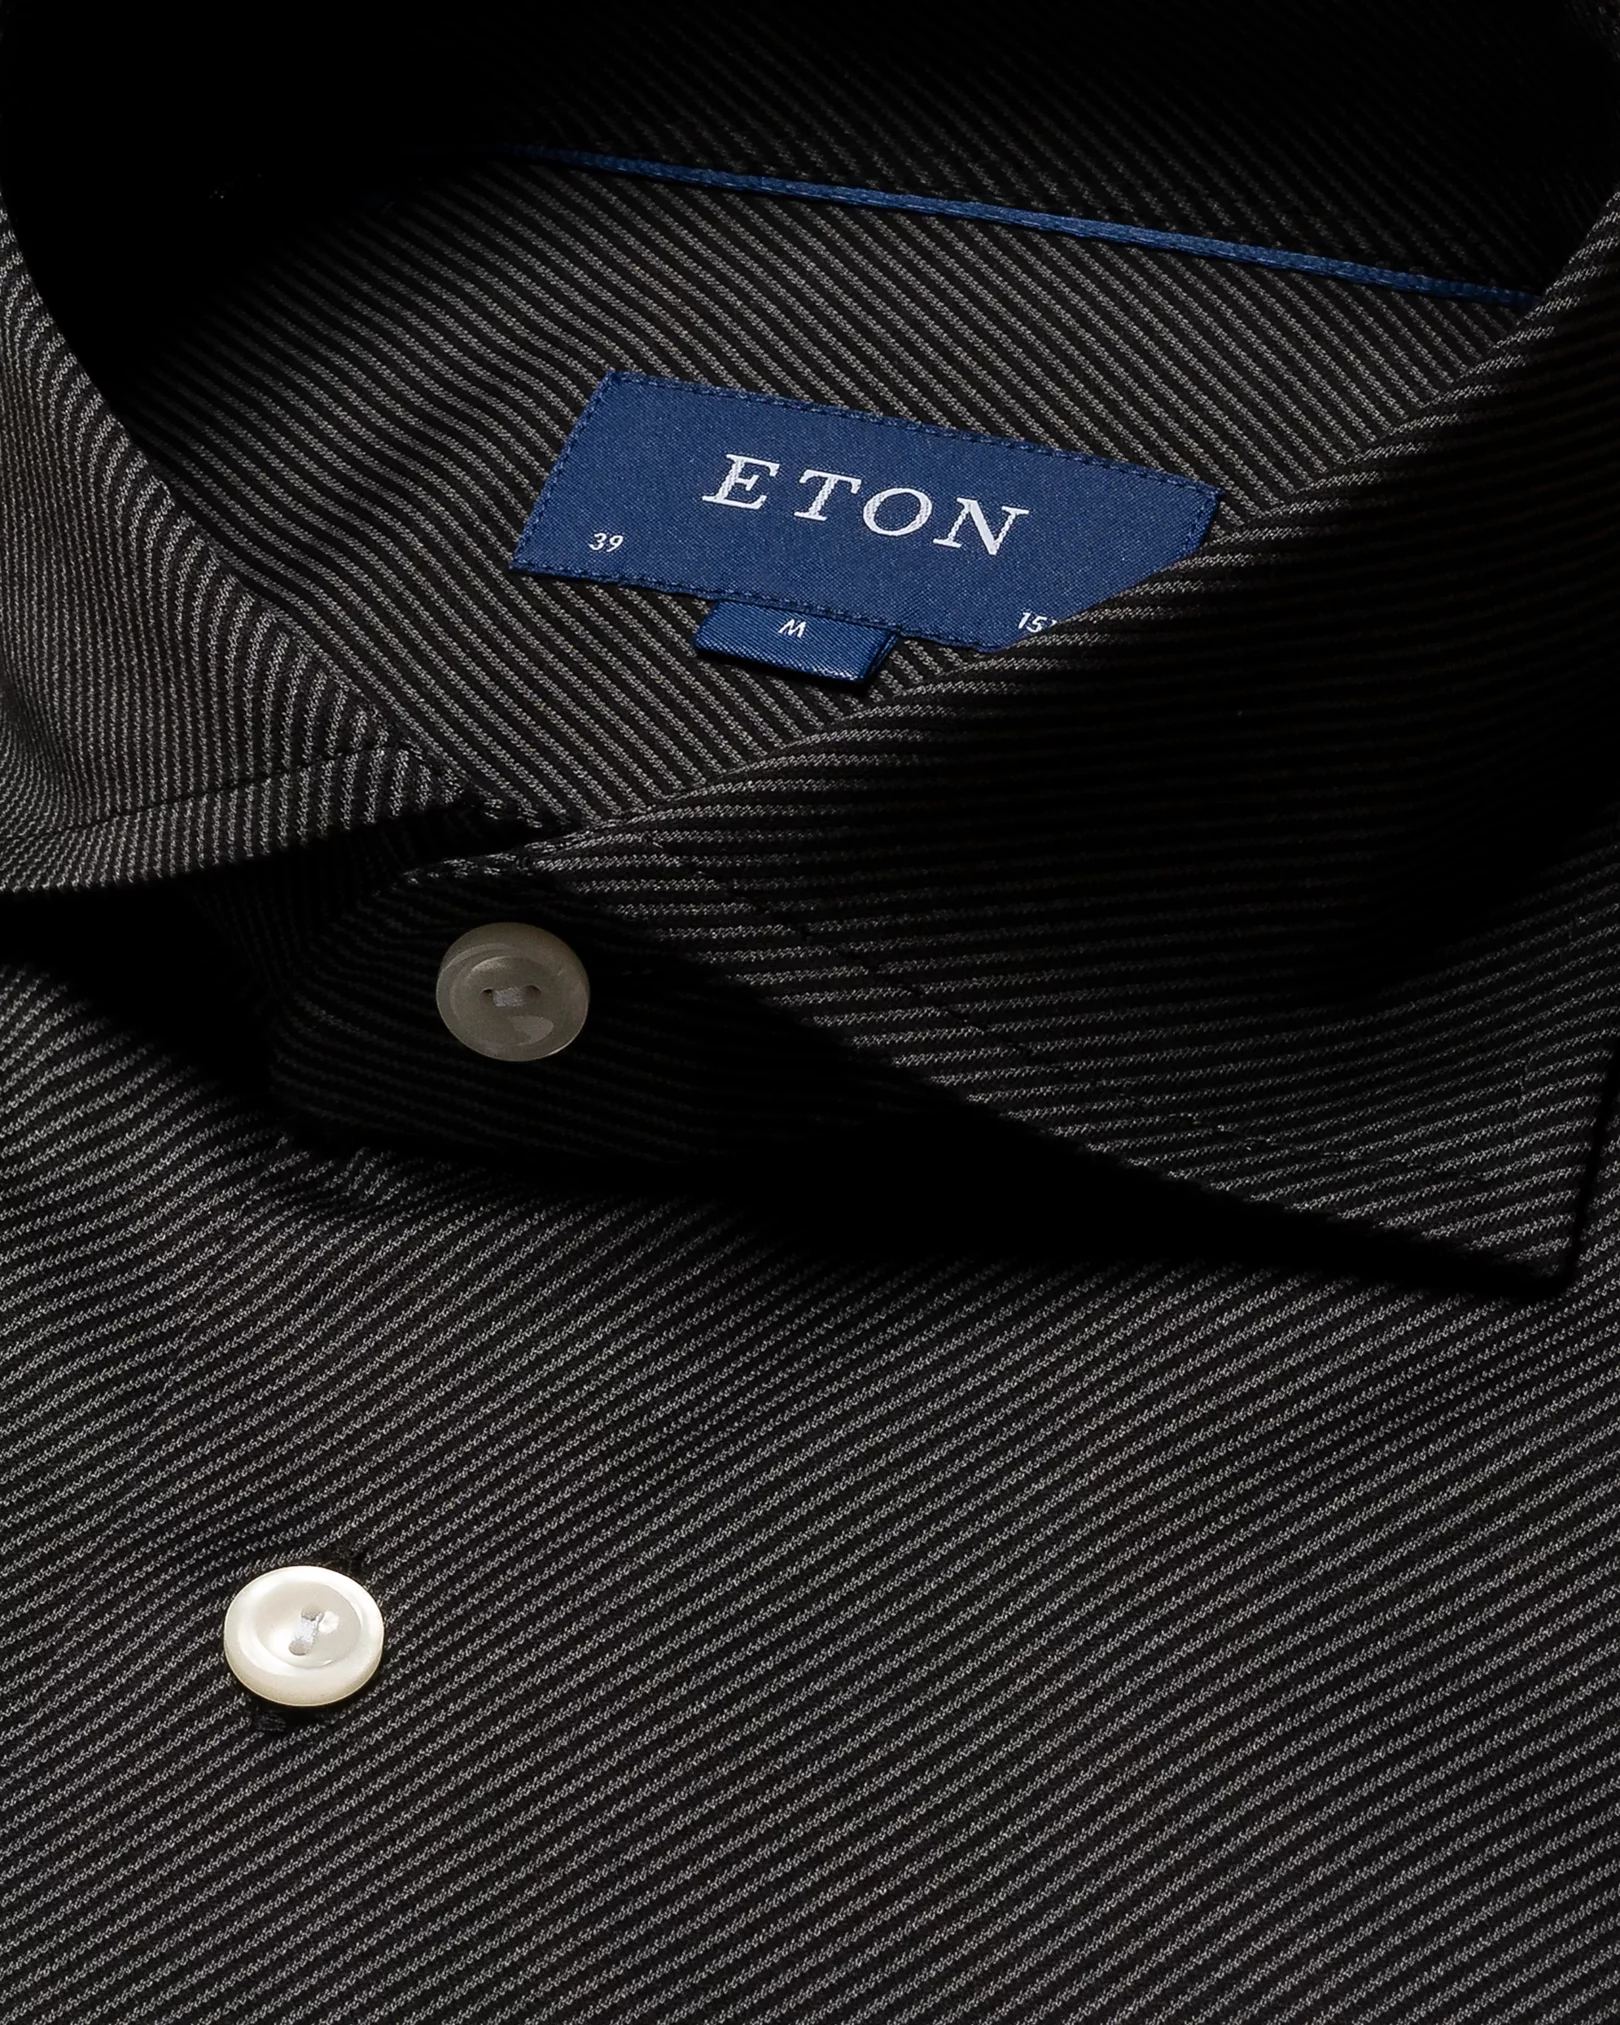 Eton - black knit king